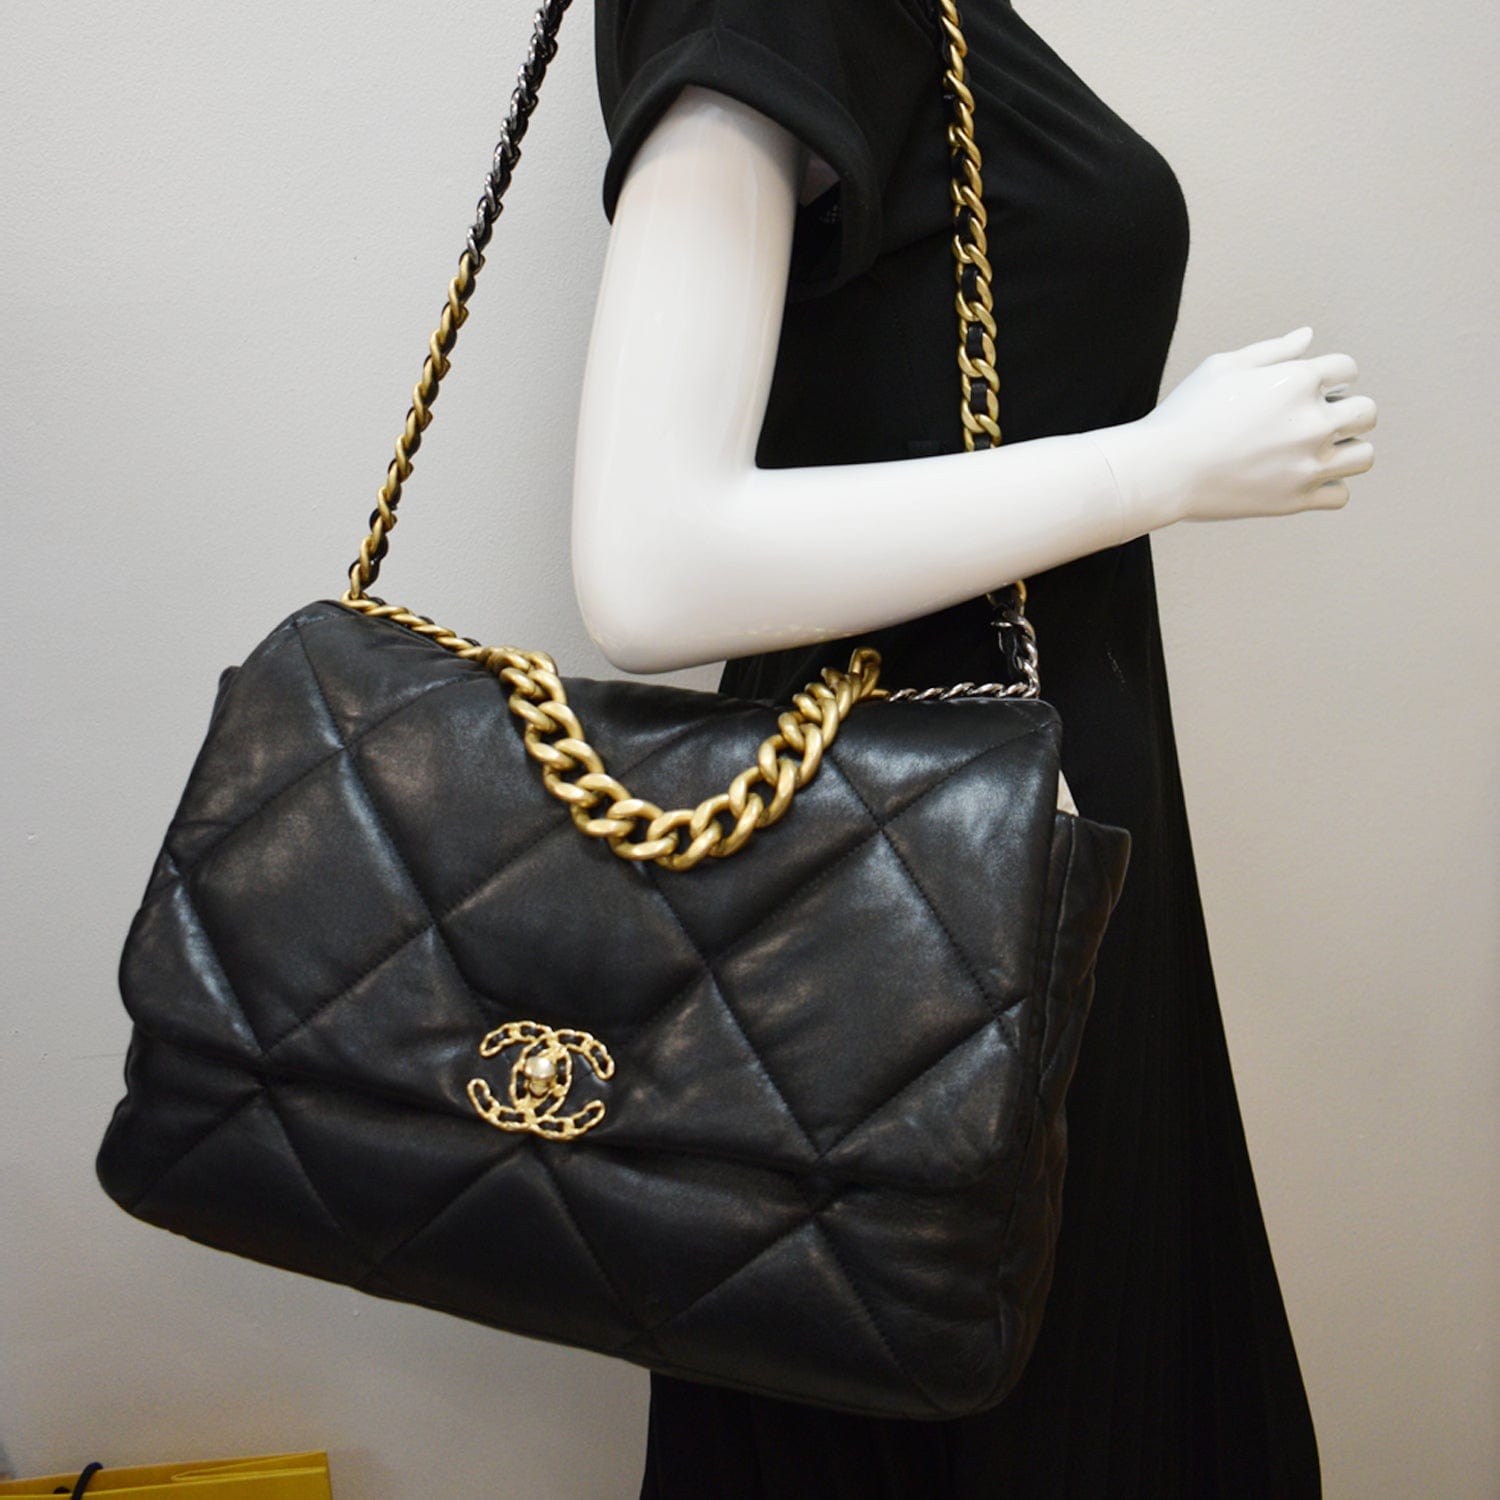 Chanel Black Large 19 Flap Bag